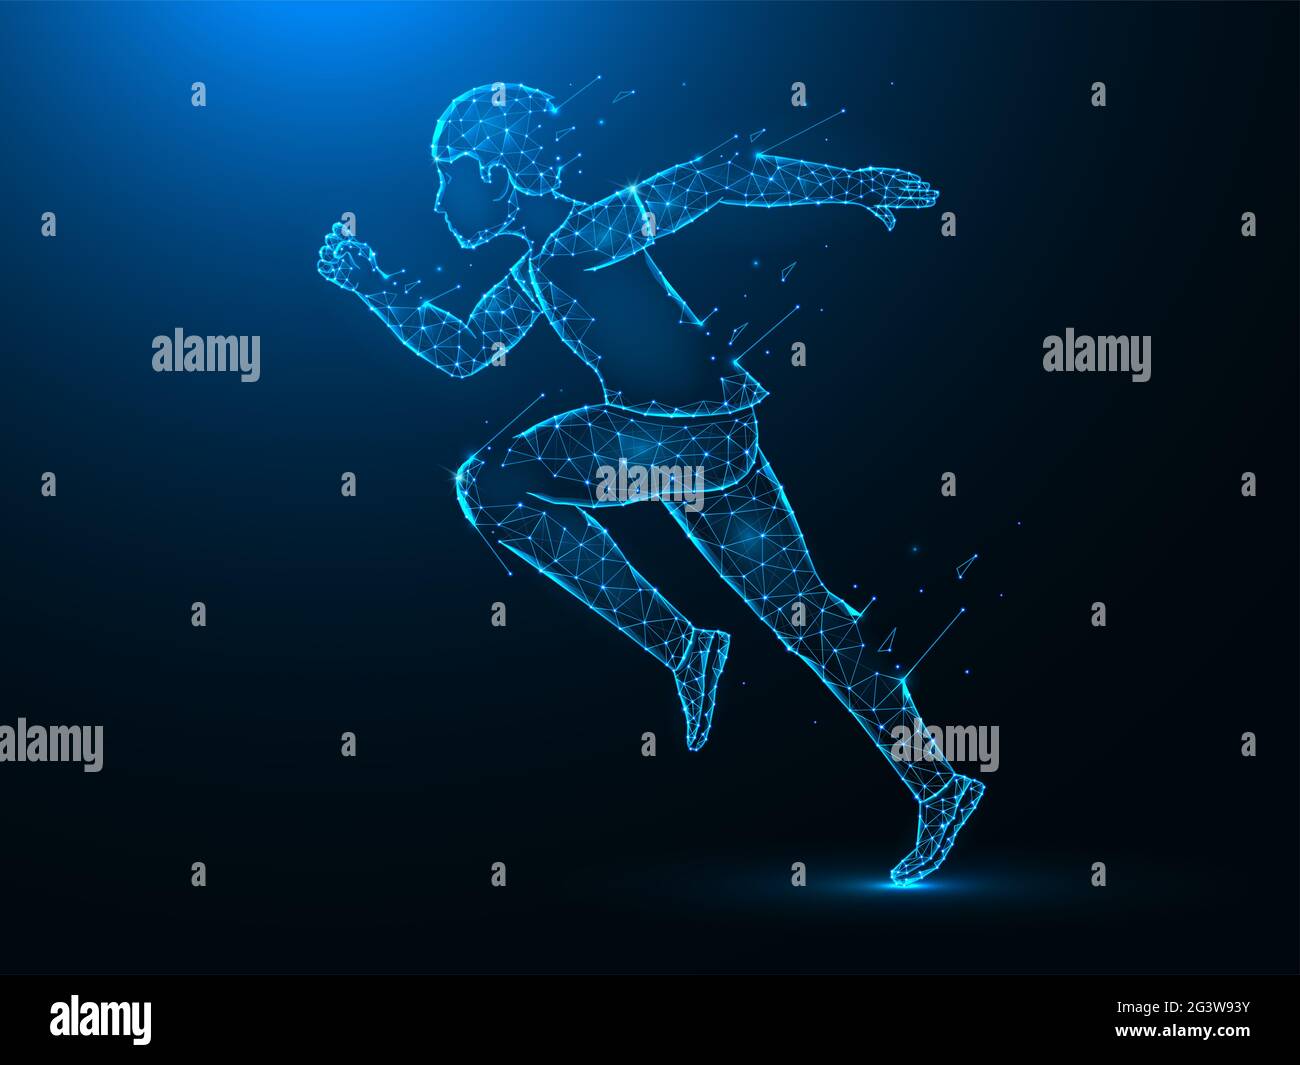 Running man mit Zerstörung Effekt Low Poly Art. Übung oder Marathon laufen polygonale Vektor-Illustrationen auf einem blauen Hintergrund. Stockfoto